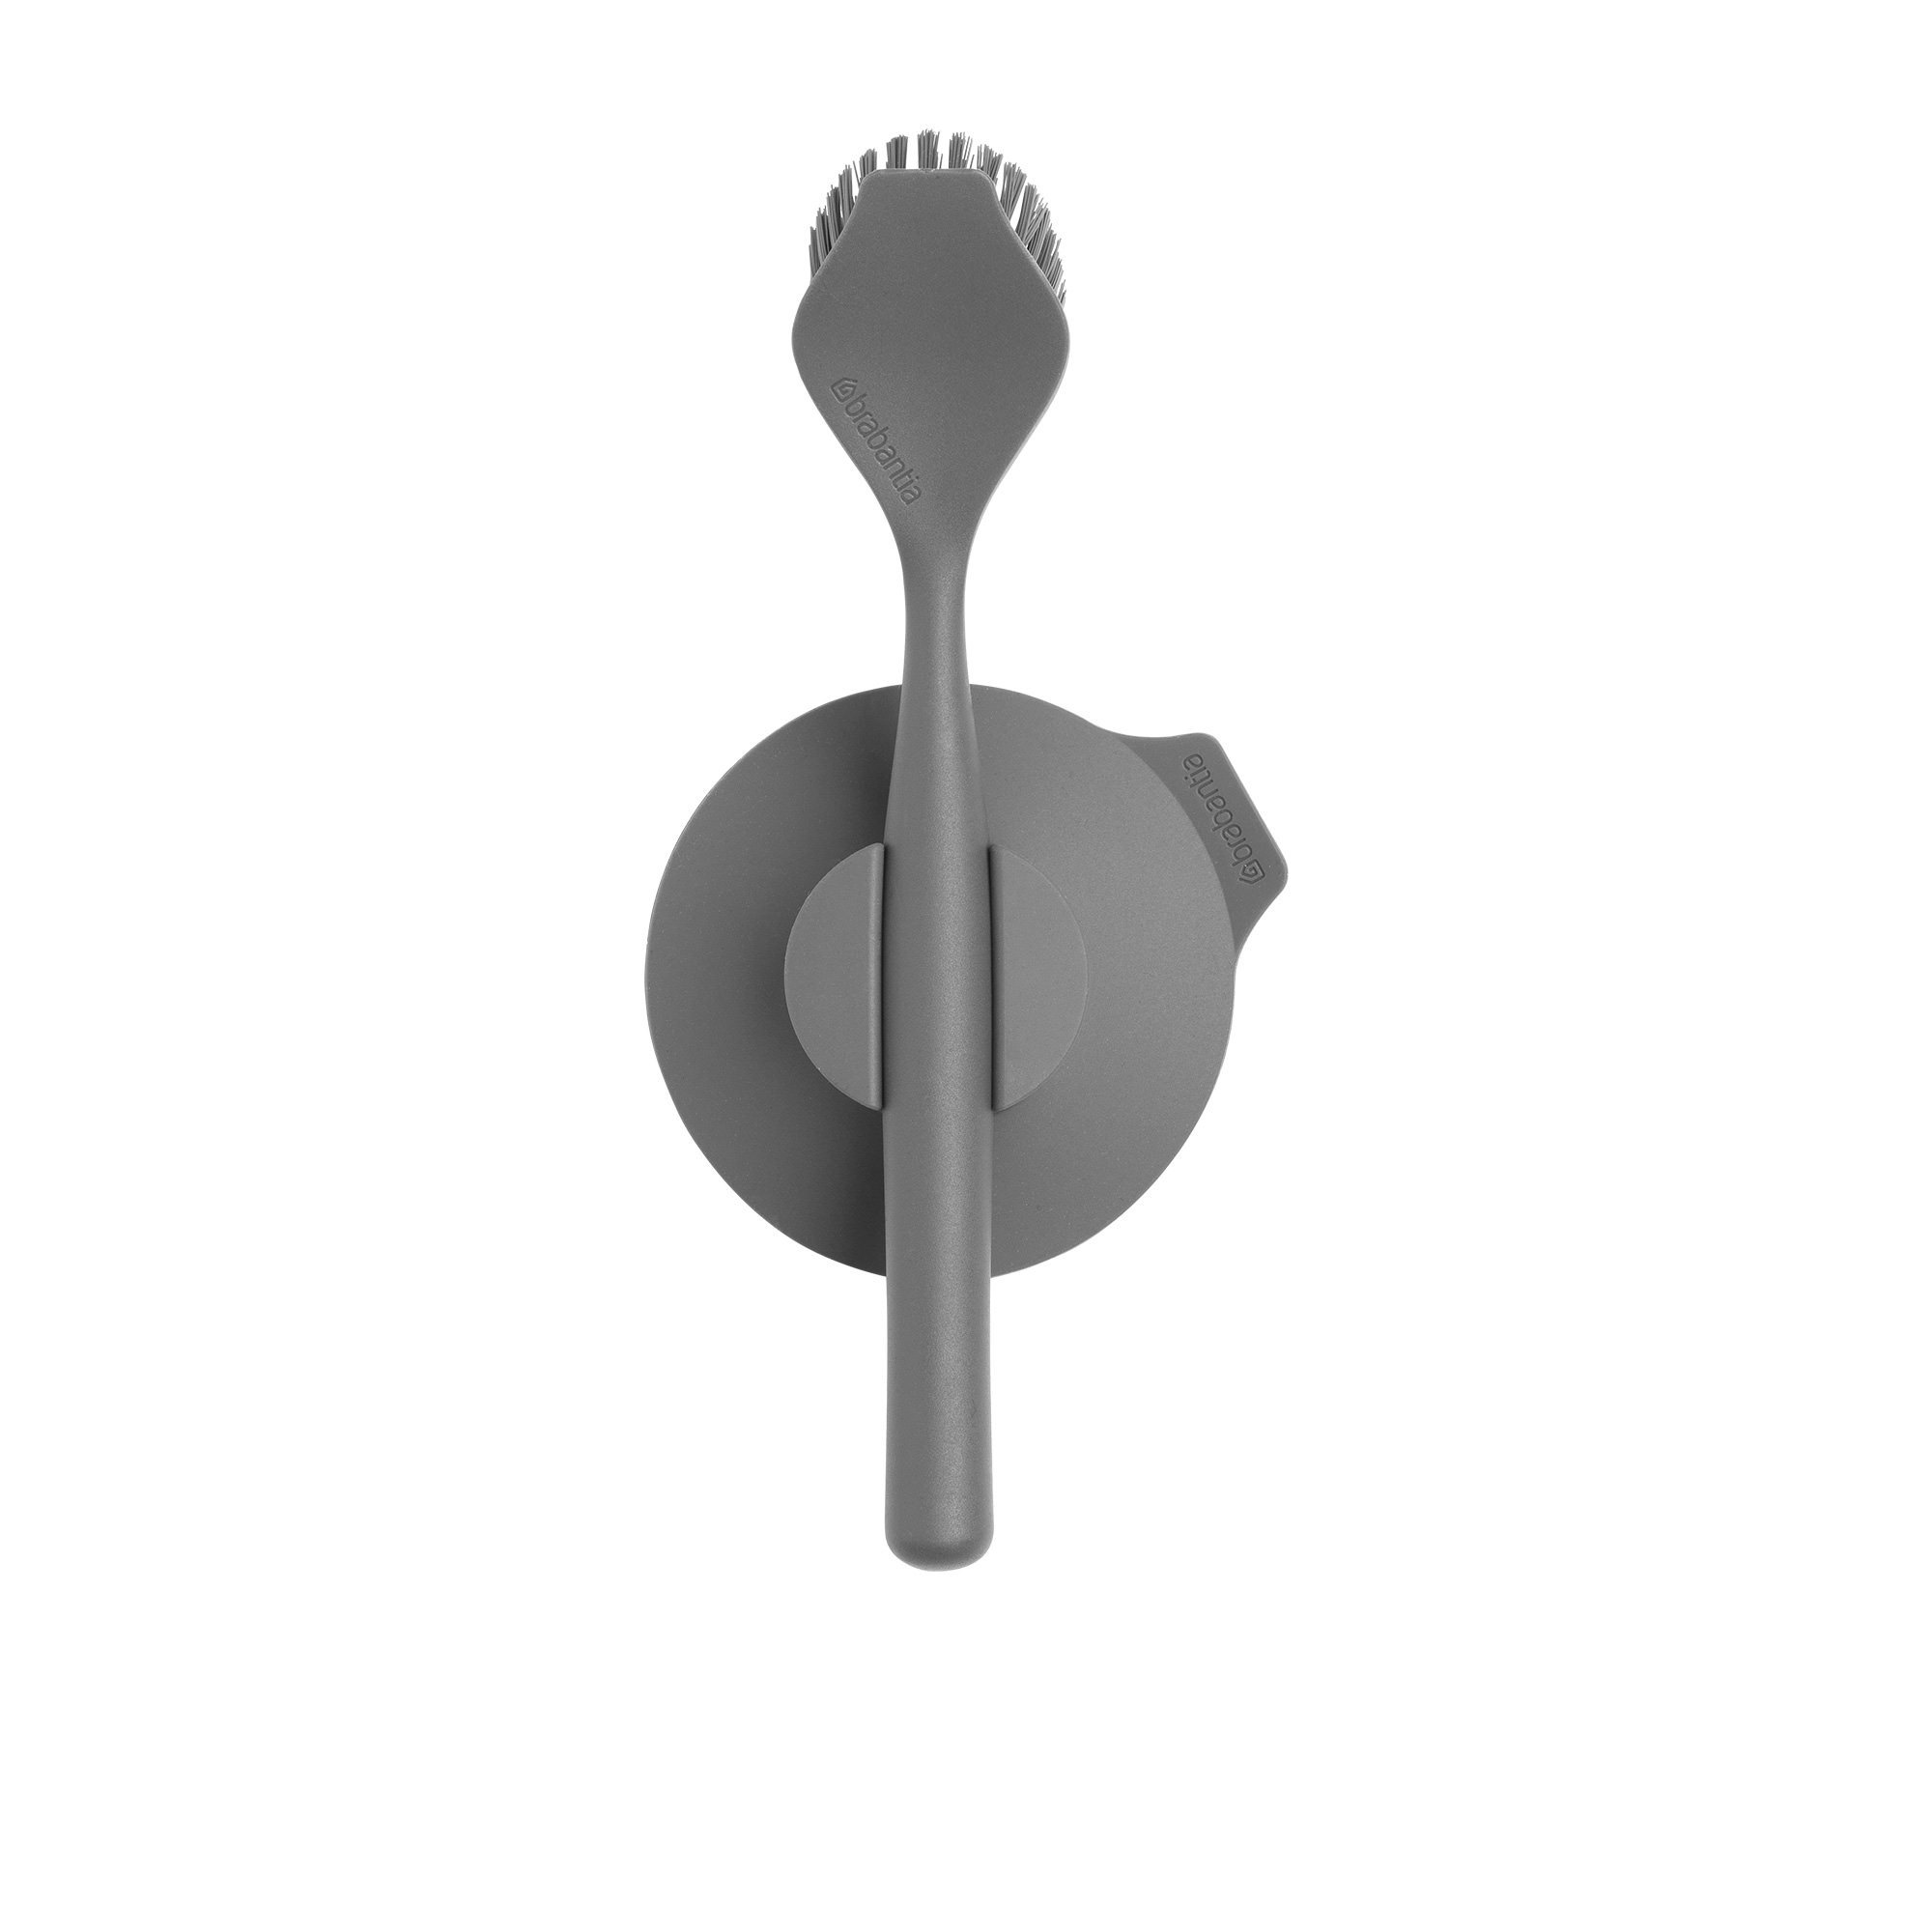 Brabantia Dish Brush with Suction Holder Dark Grey Image 1